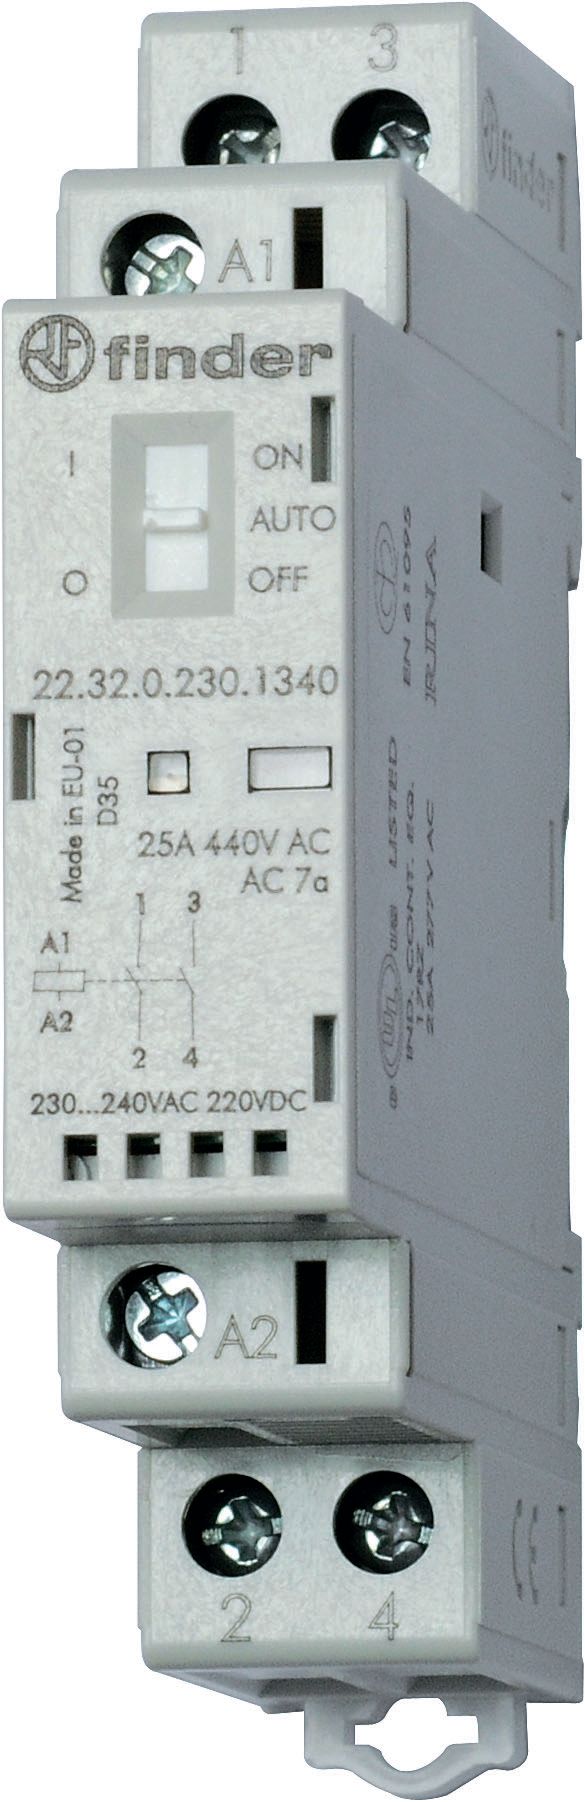 Изображение Finder Модульный контактор; 1NO+1NC 25А; контакты AgSnO2; катушка 12В АС/DC; ширина 17.5мм; степень защиты IP20; опции: переключатель Авто-Вкл-Выкл +